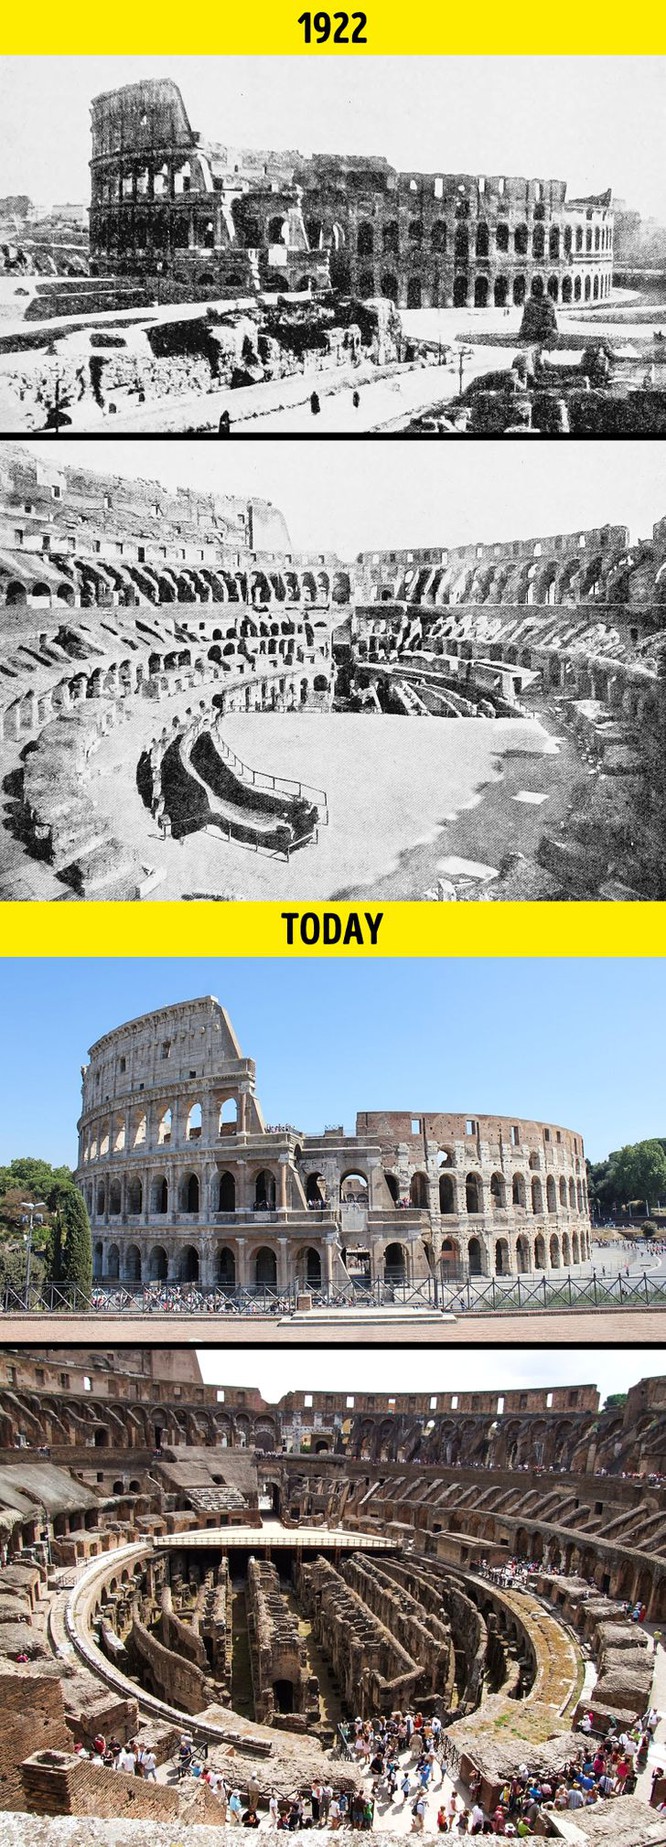 Đấu trường La Mã ở Rome (Italia) - biểu tượng của đế chế La Mã - vẫn còn nguyên vẹn